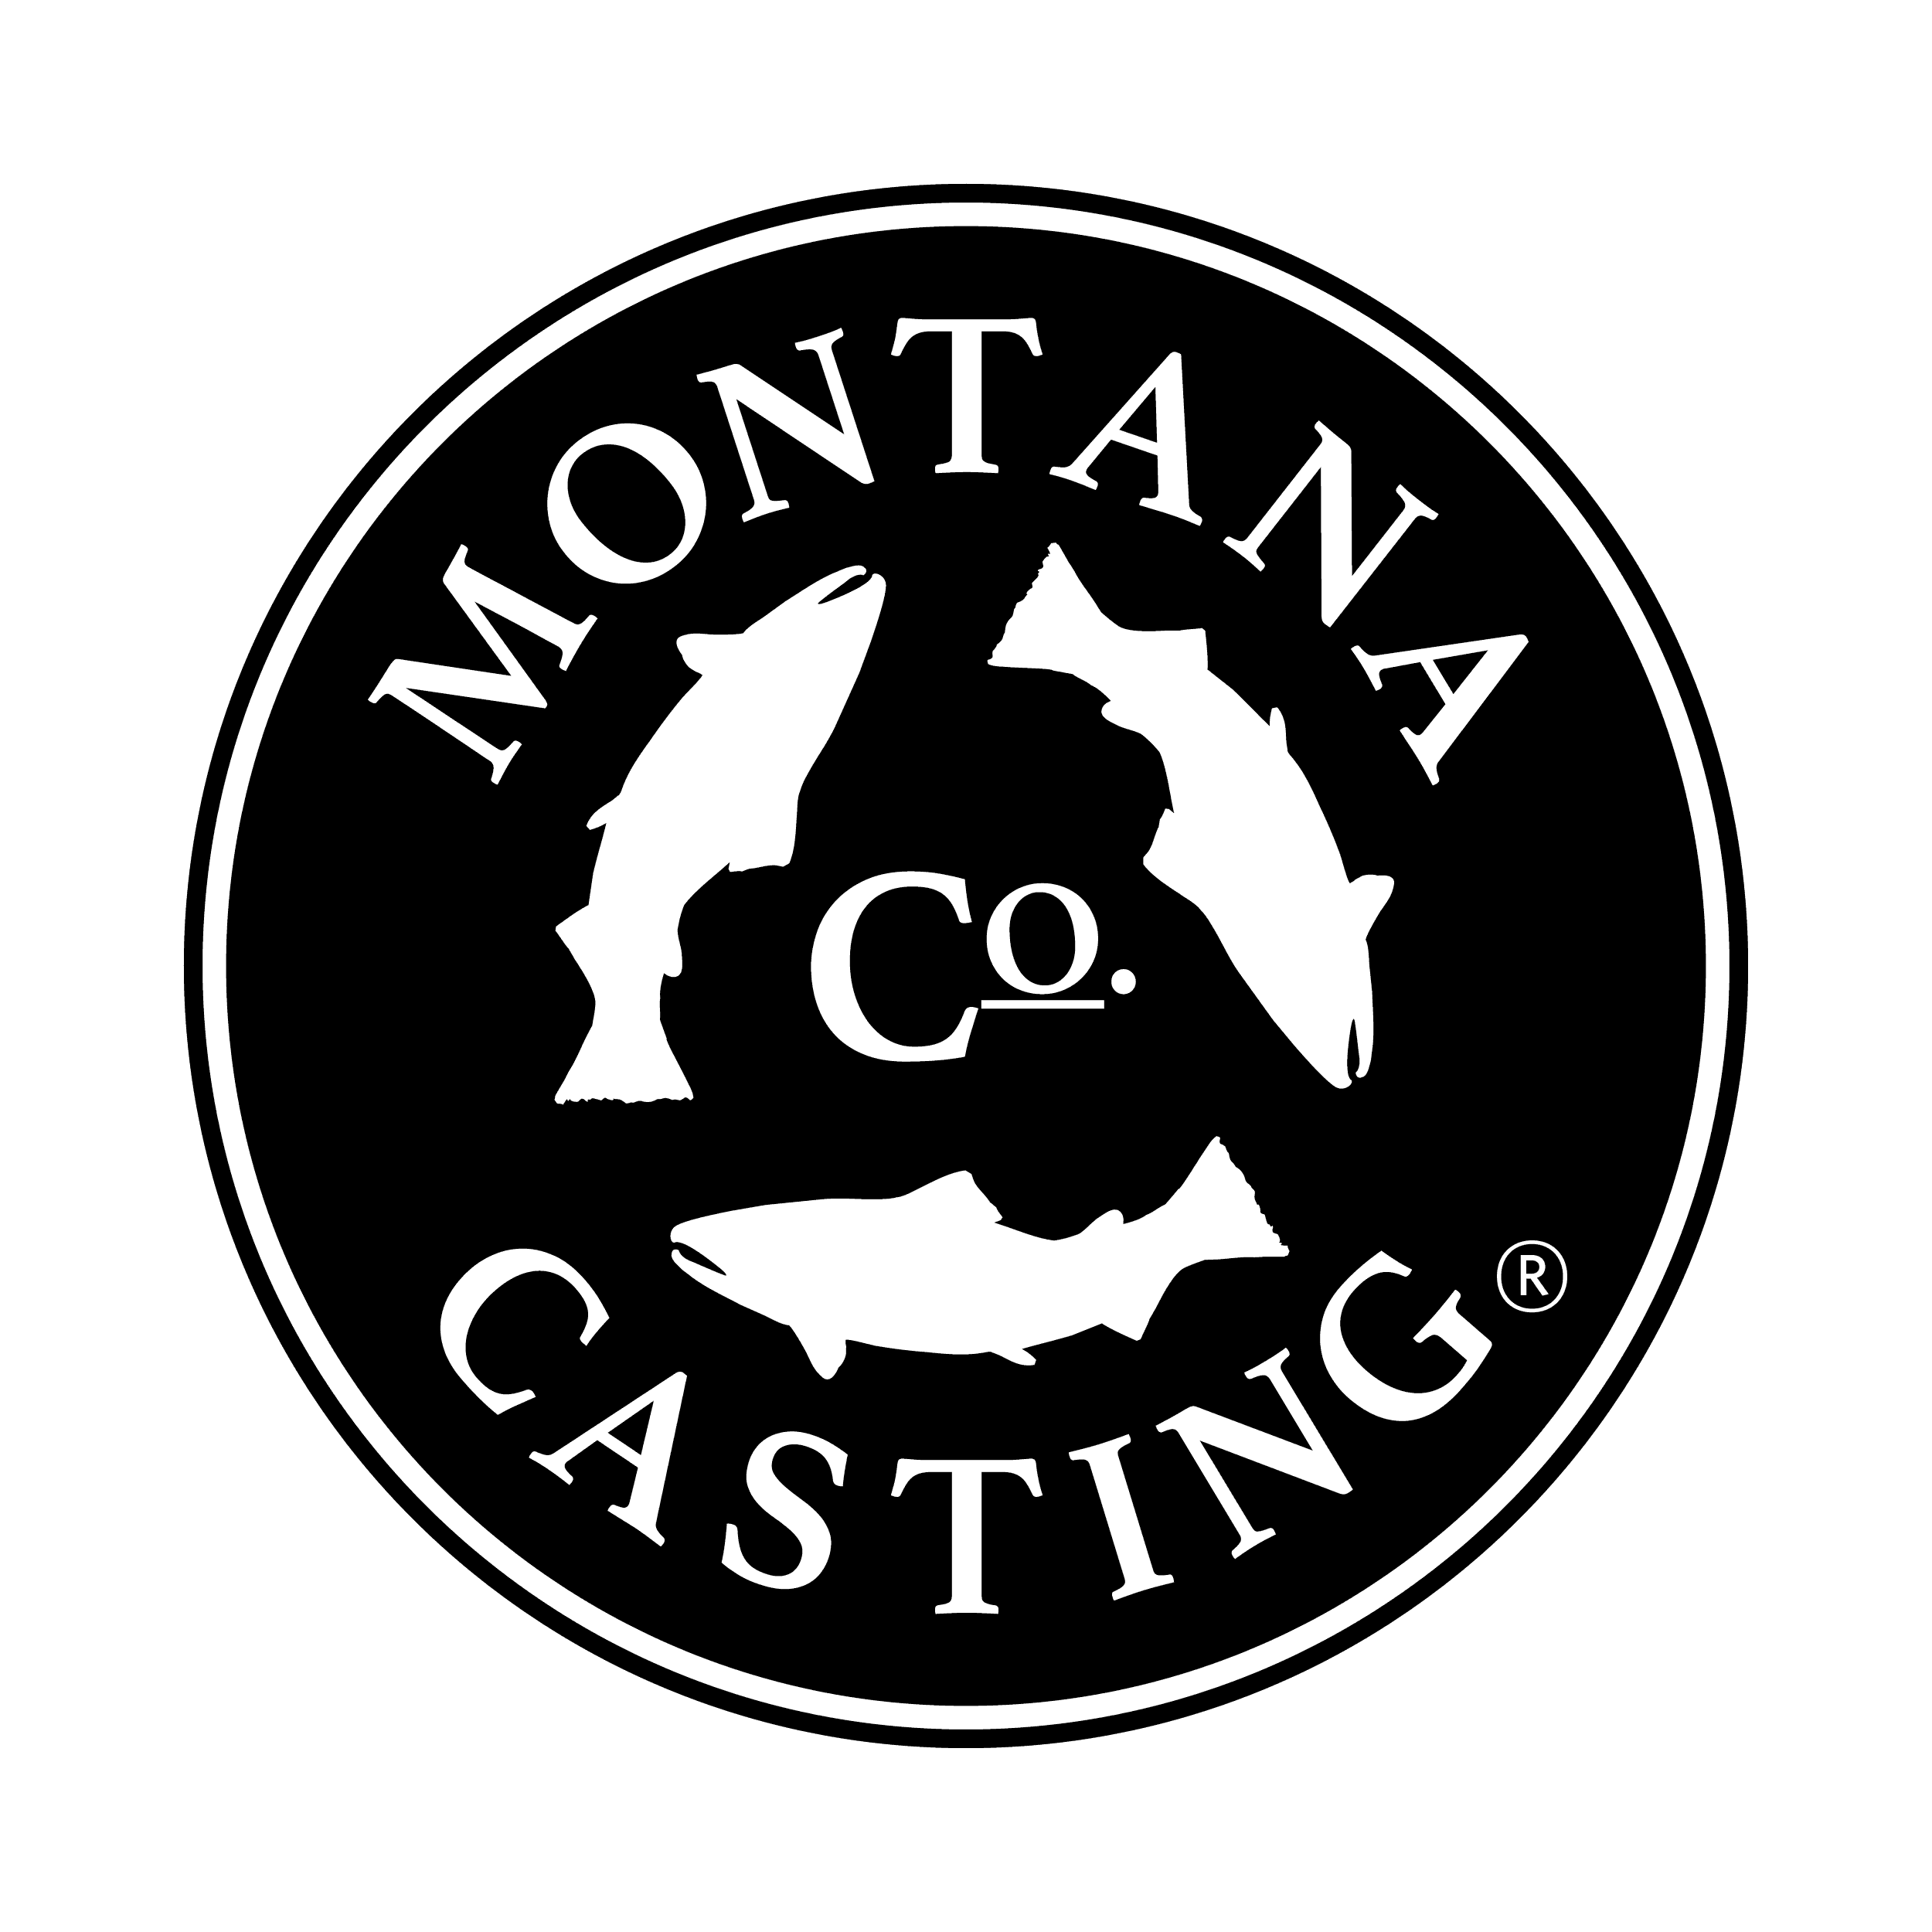 Montana Casting Co. Logo